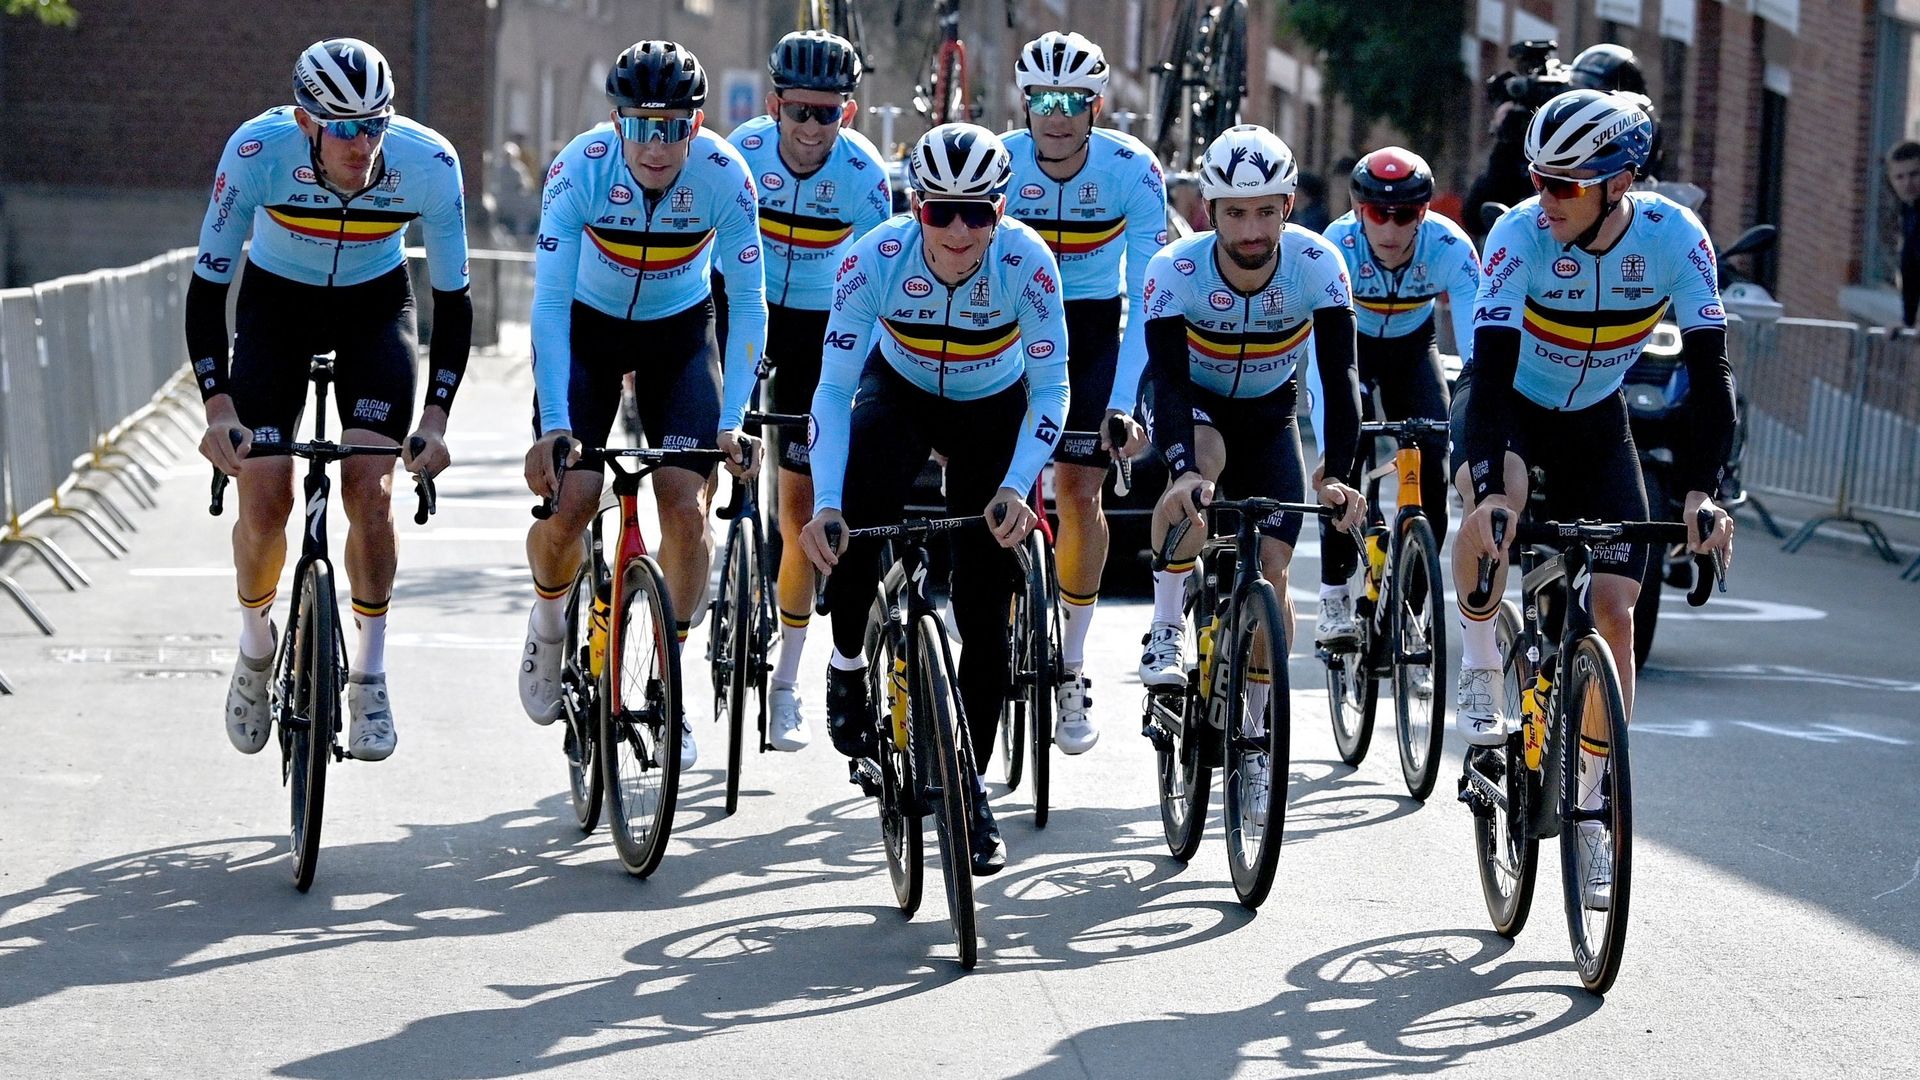 Mondiaux de cyclisme : L’équipe belge emmenée par Wout van Aert